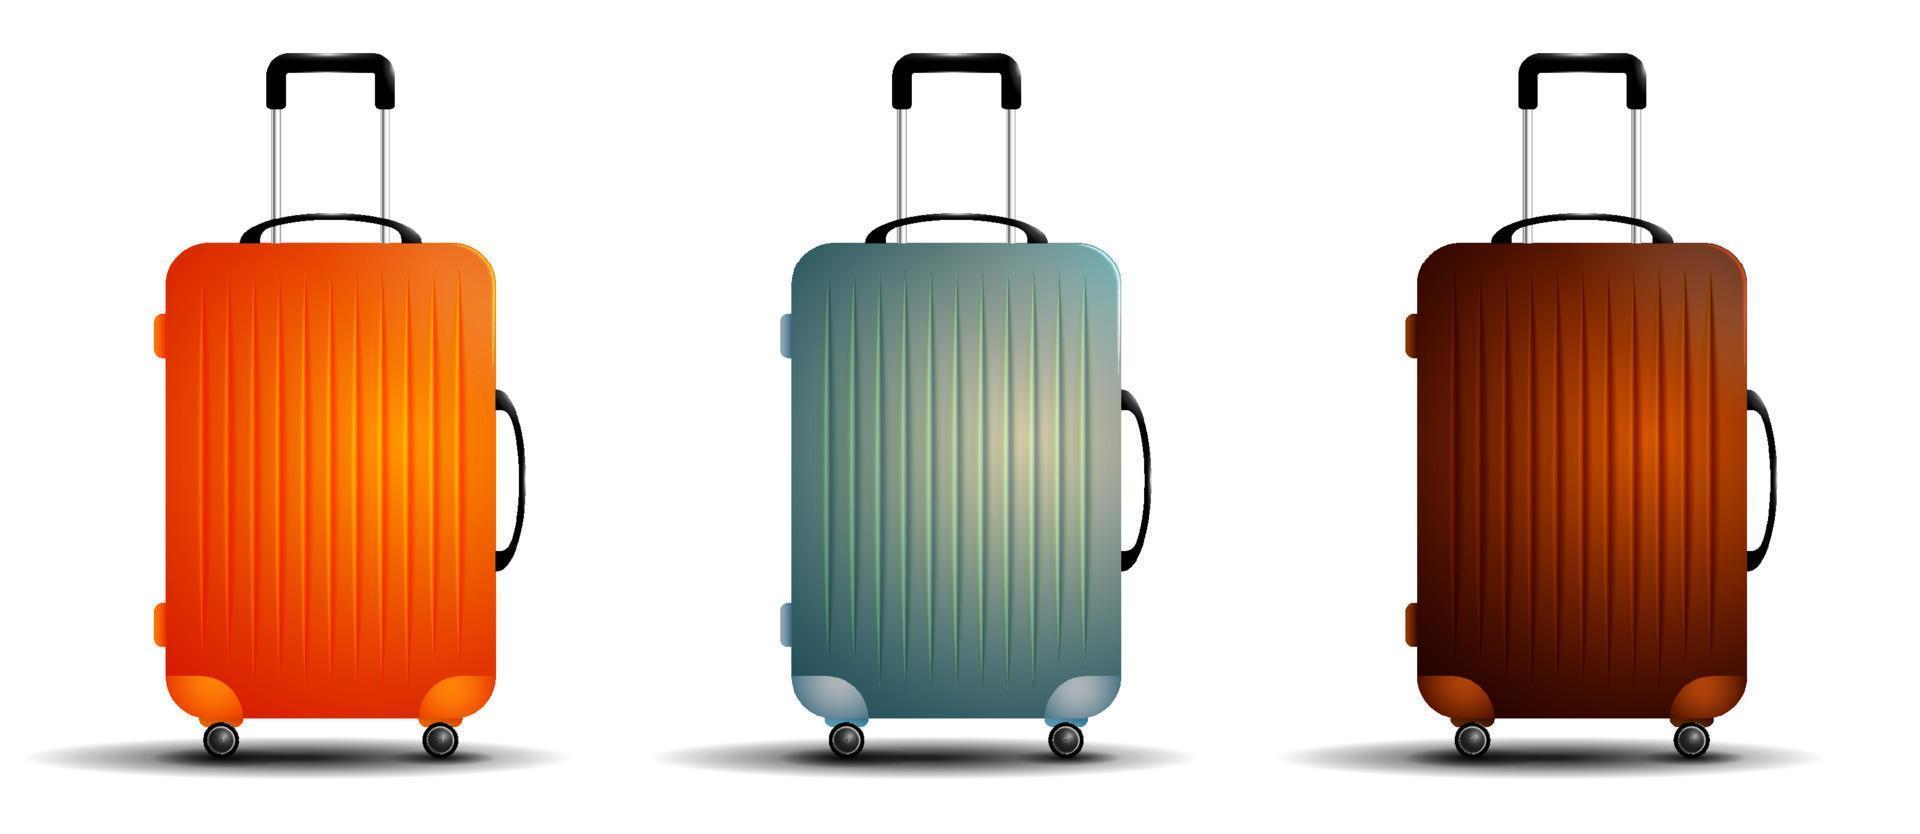 bolsa de viagem colorida. mala para bagagem sobre rodas. transporte de coisas em transporte durante as férias. vetor realista